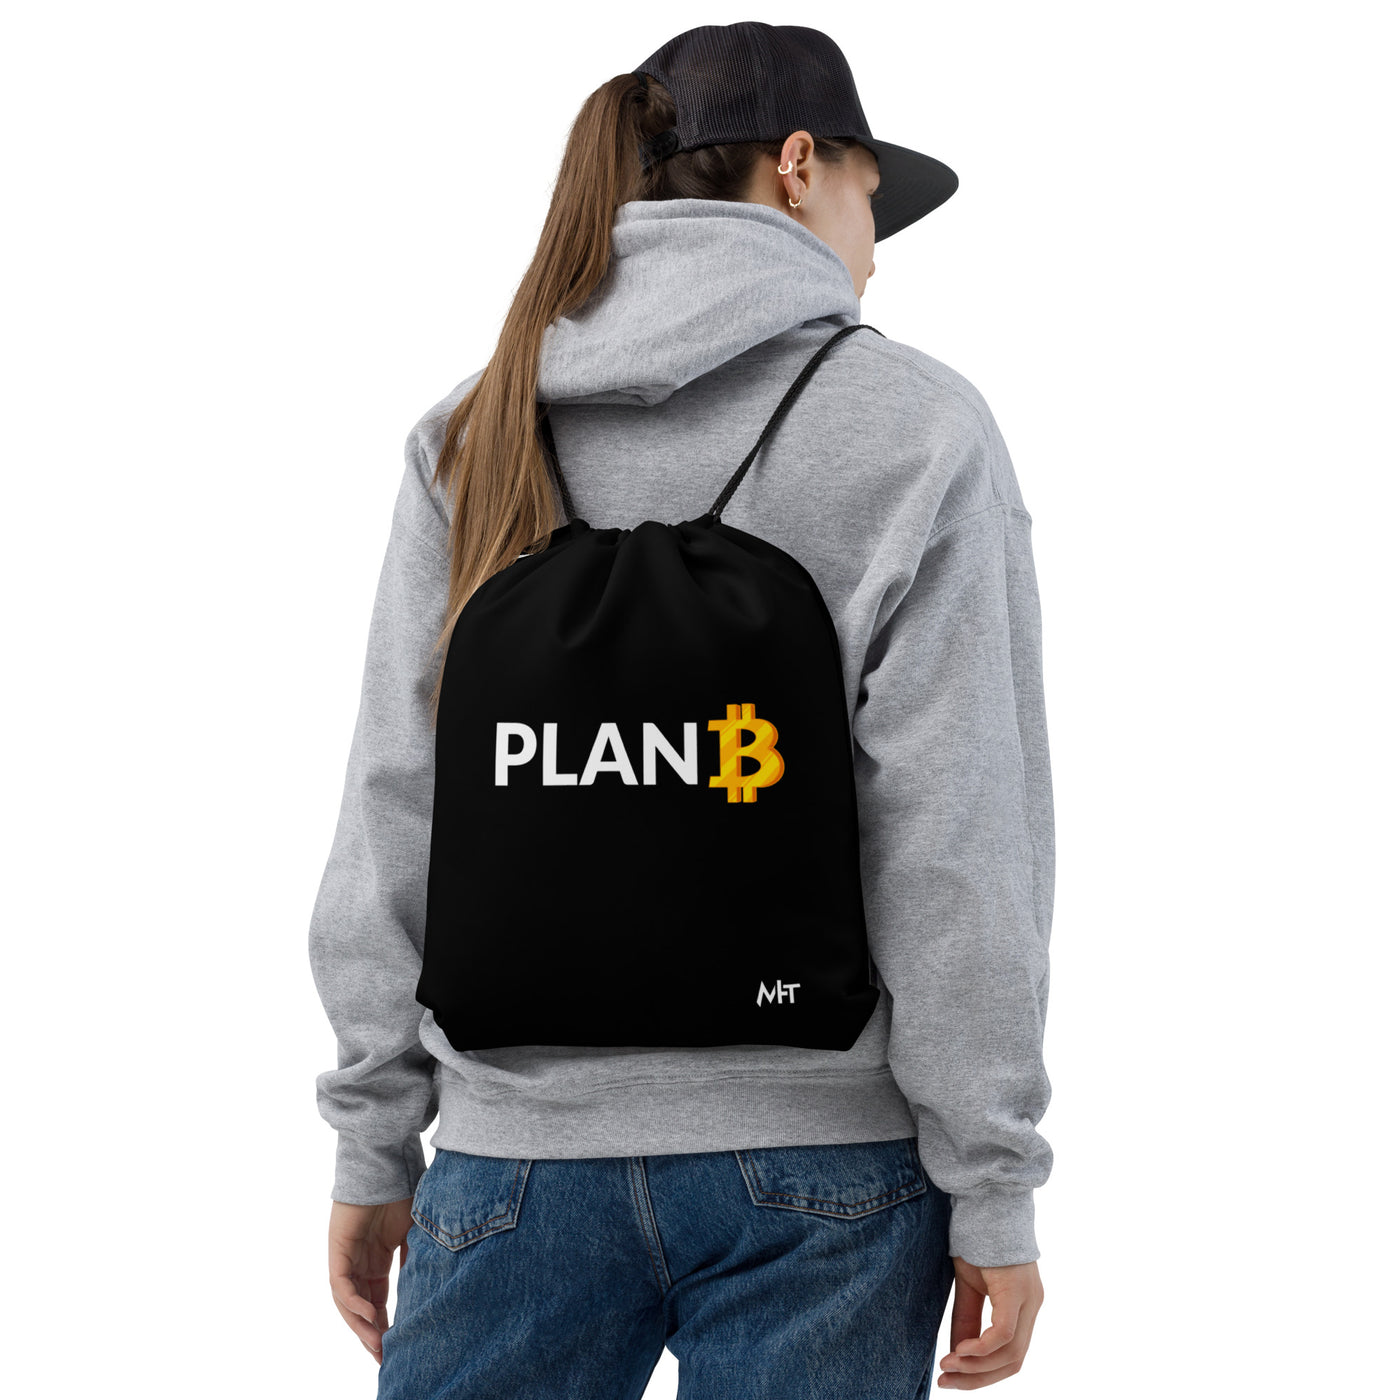 Plan B v1 - Drawstring bag